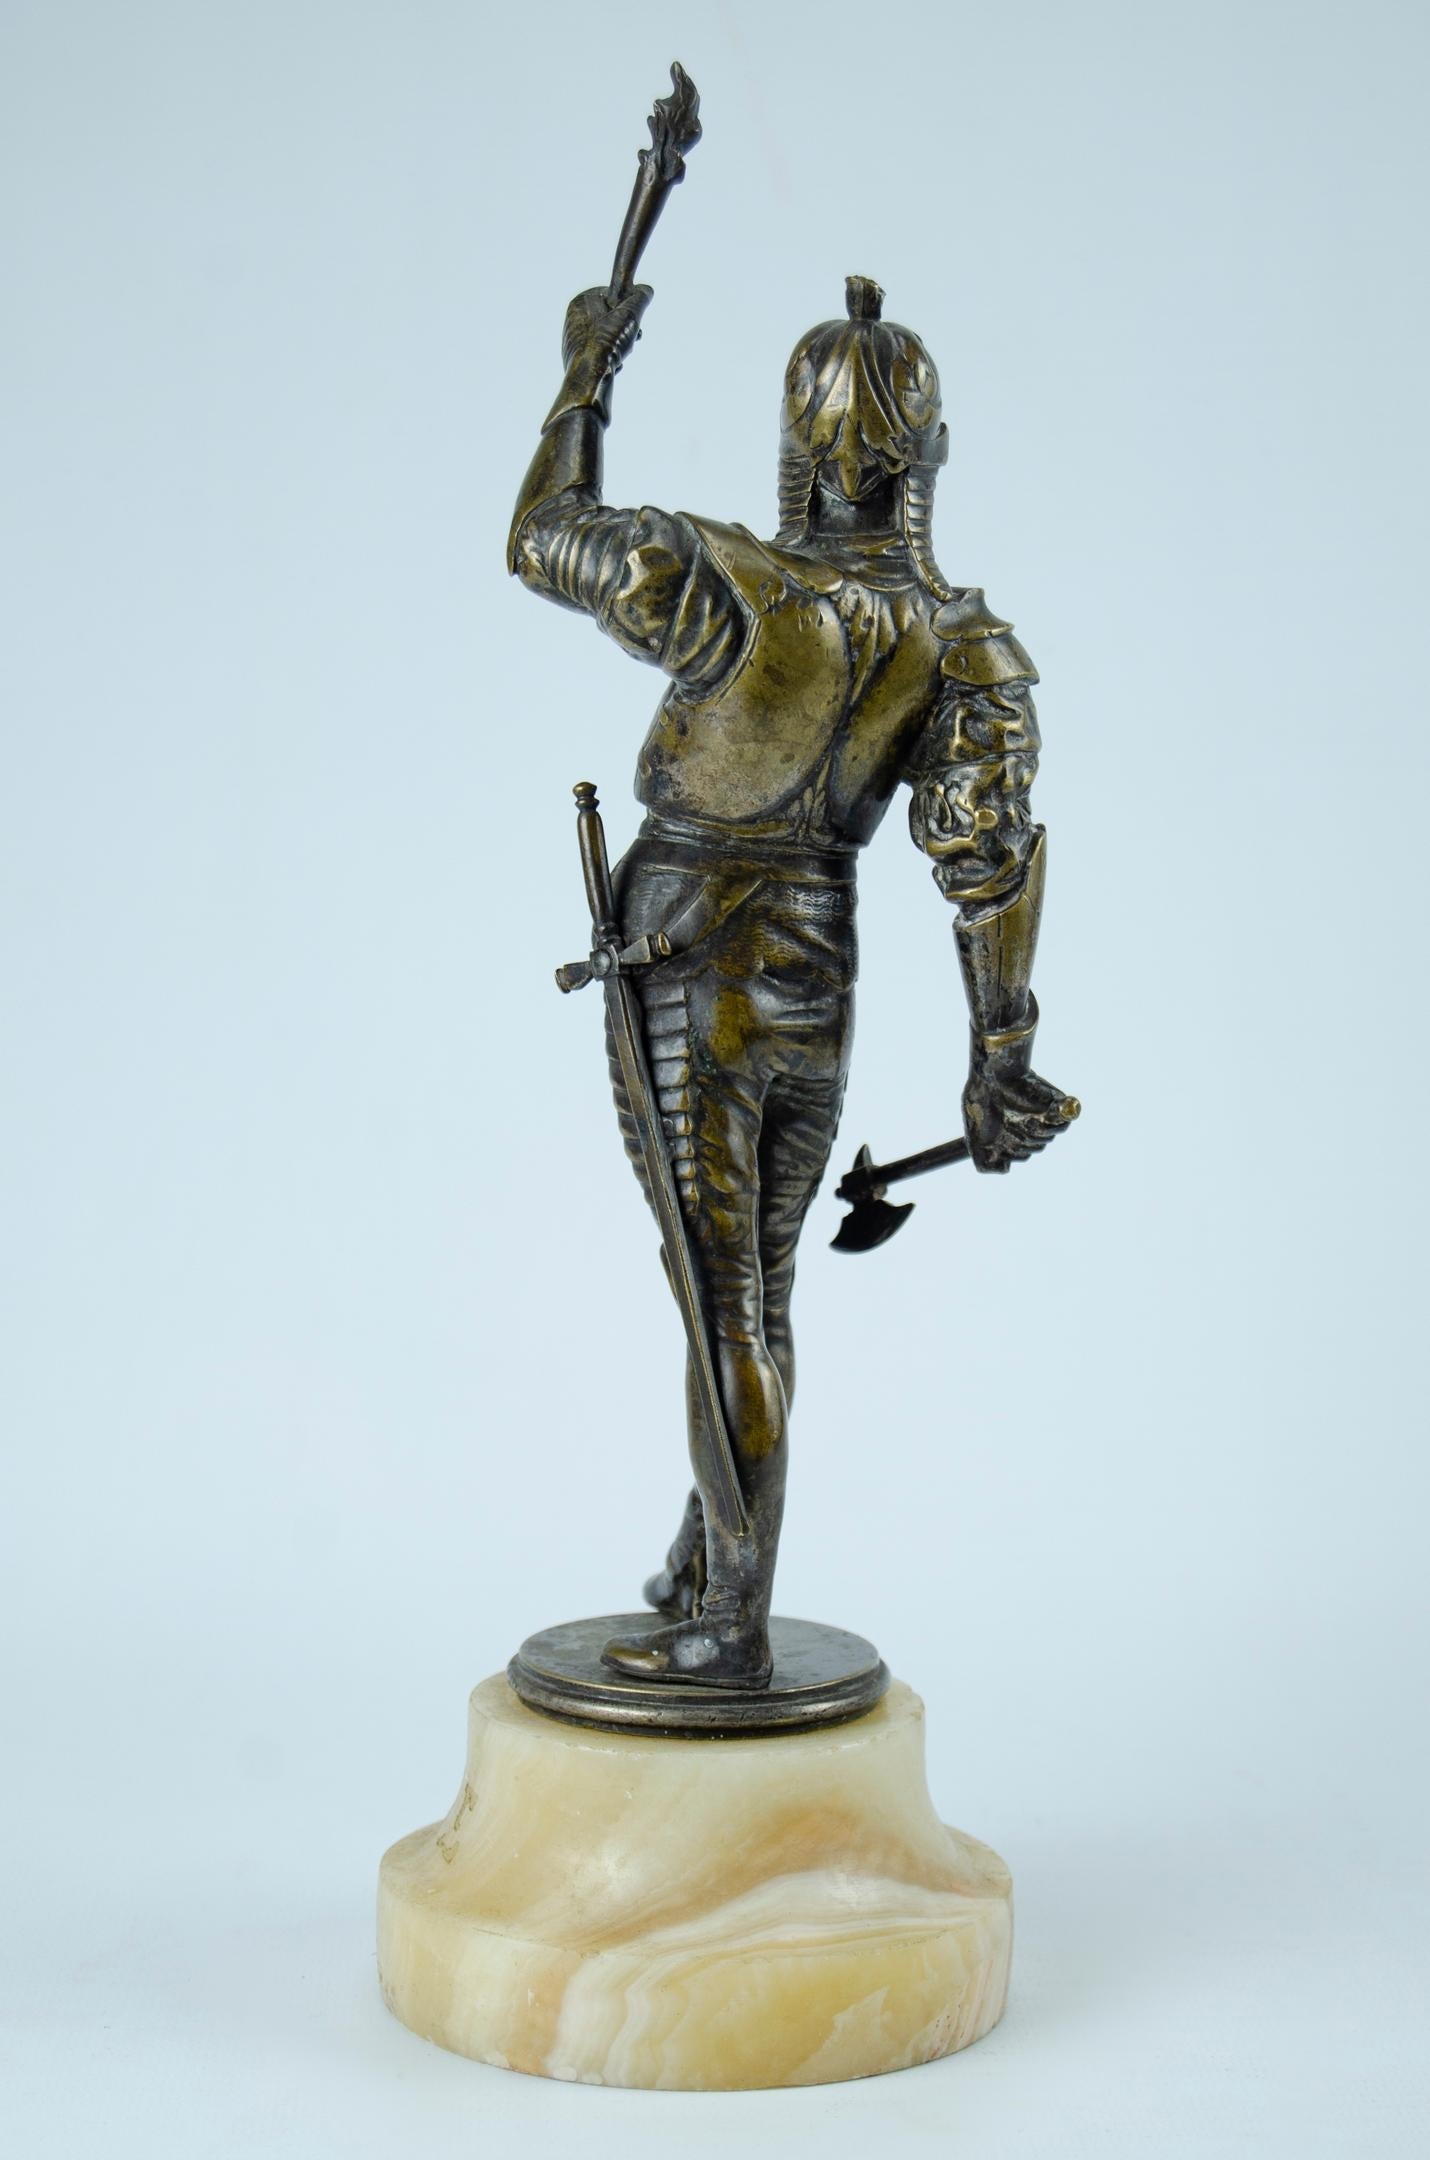 Sculpture en bronze soldat en armure
Onix base origine France
vers 1900
usure naturelle
Très bon état.
les mesures sont prises à la base.